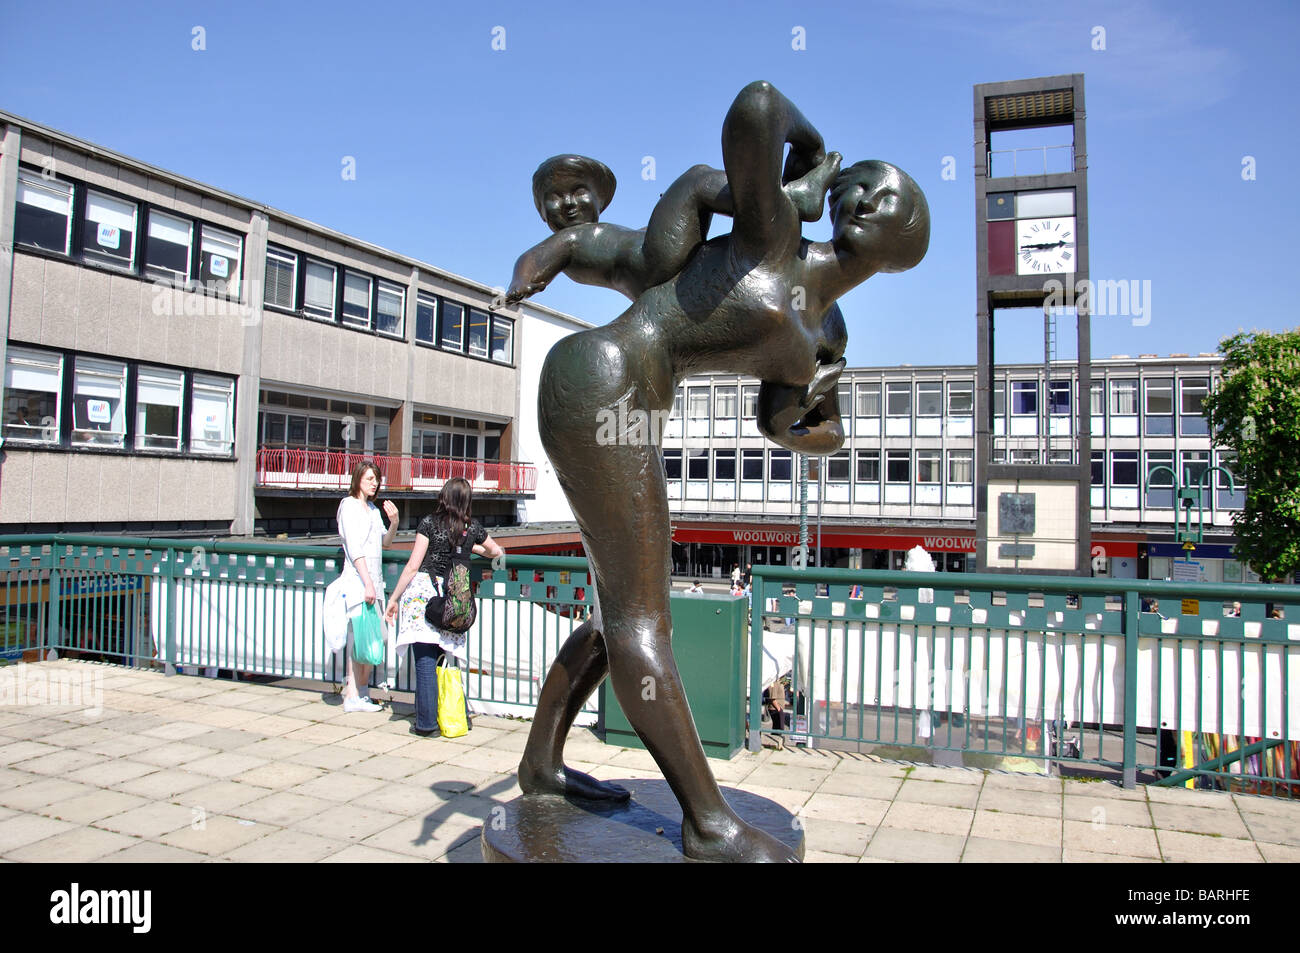 La sculpture de la mère et de l'enfant et de l'horloge, Town Square, Stevenage, Hertfordshire, Angleterre, Royaume-Uni Banque D'Images